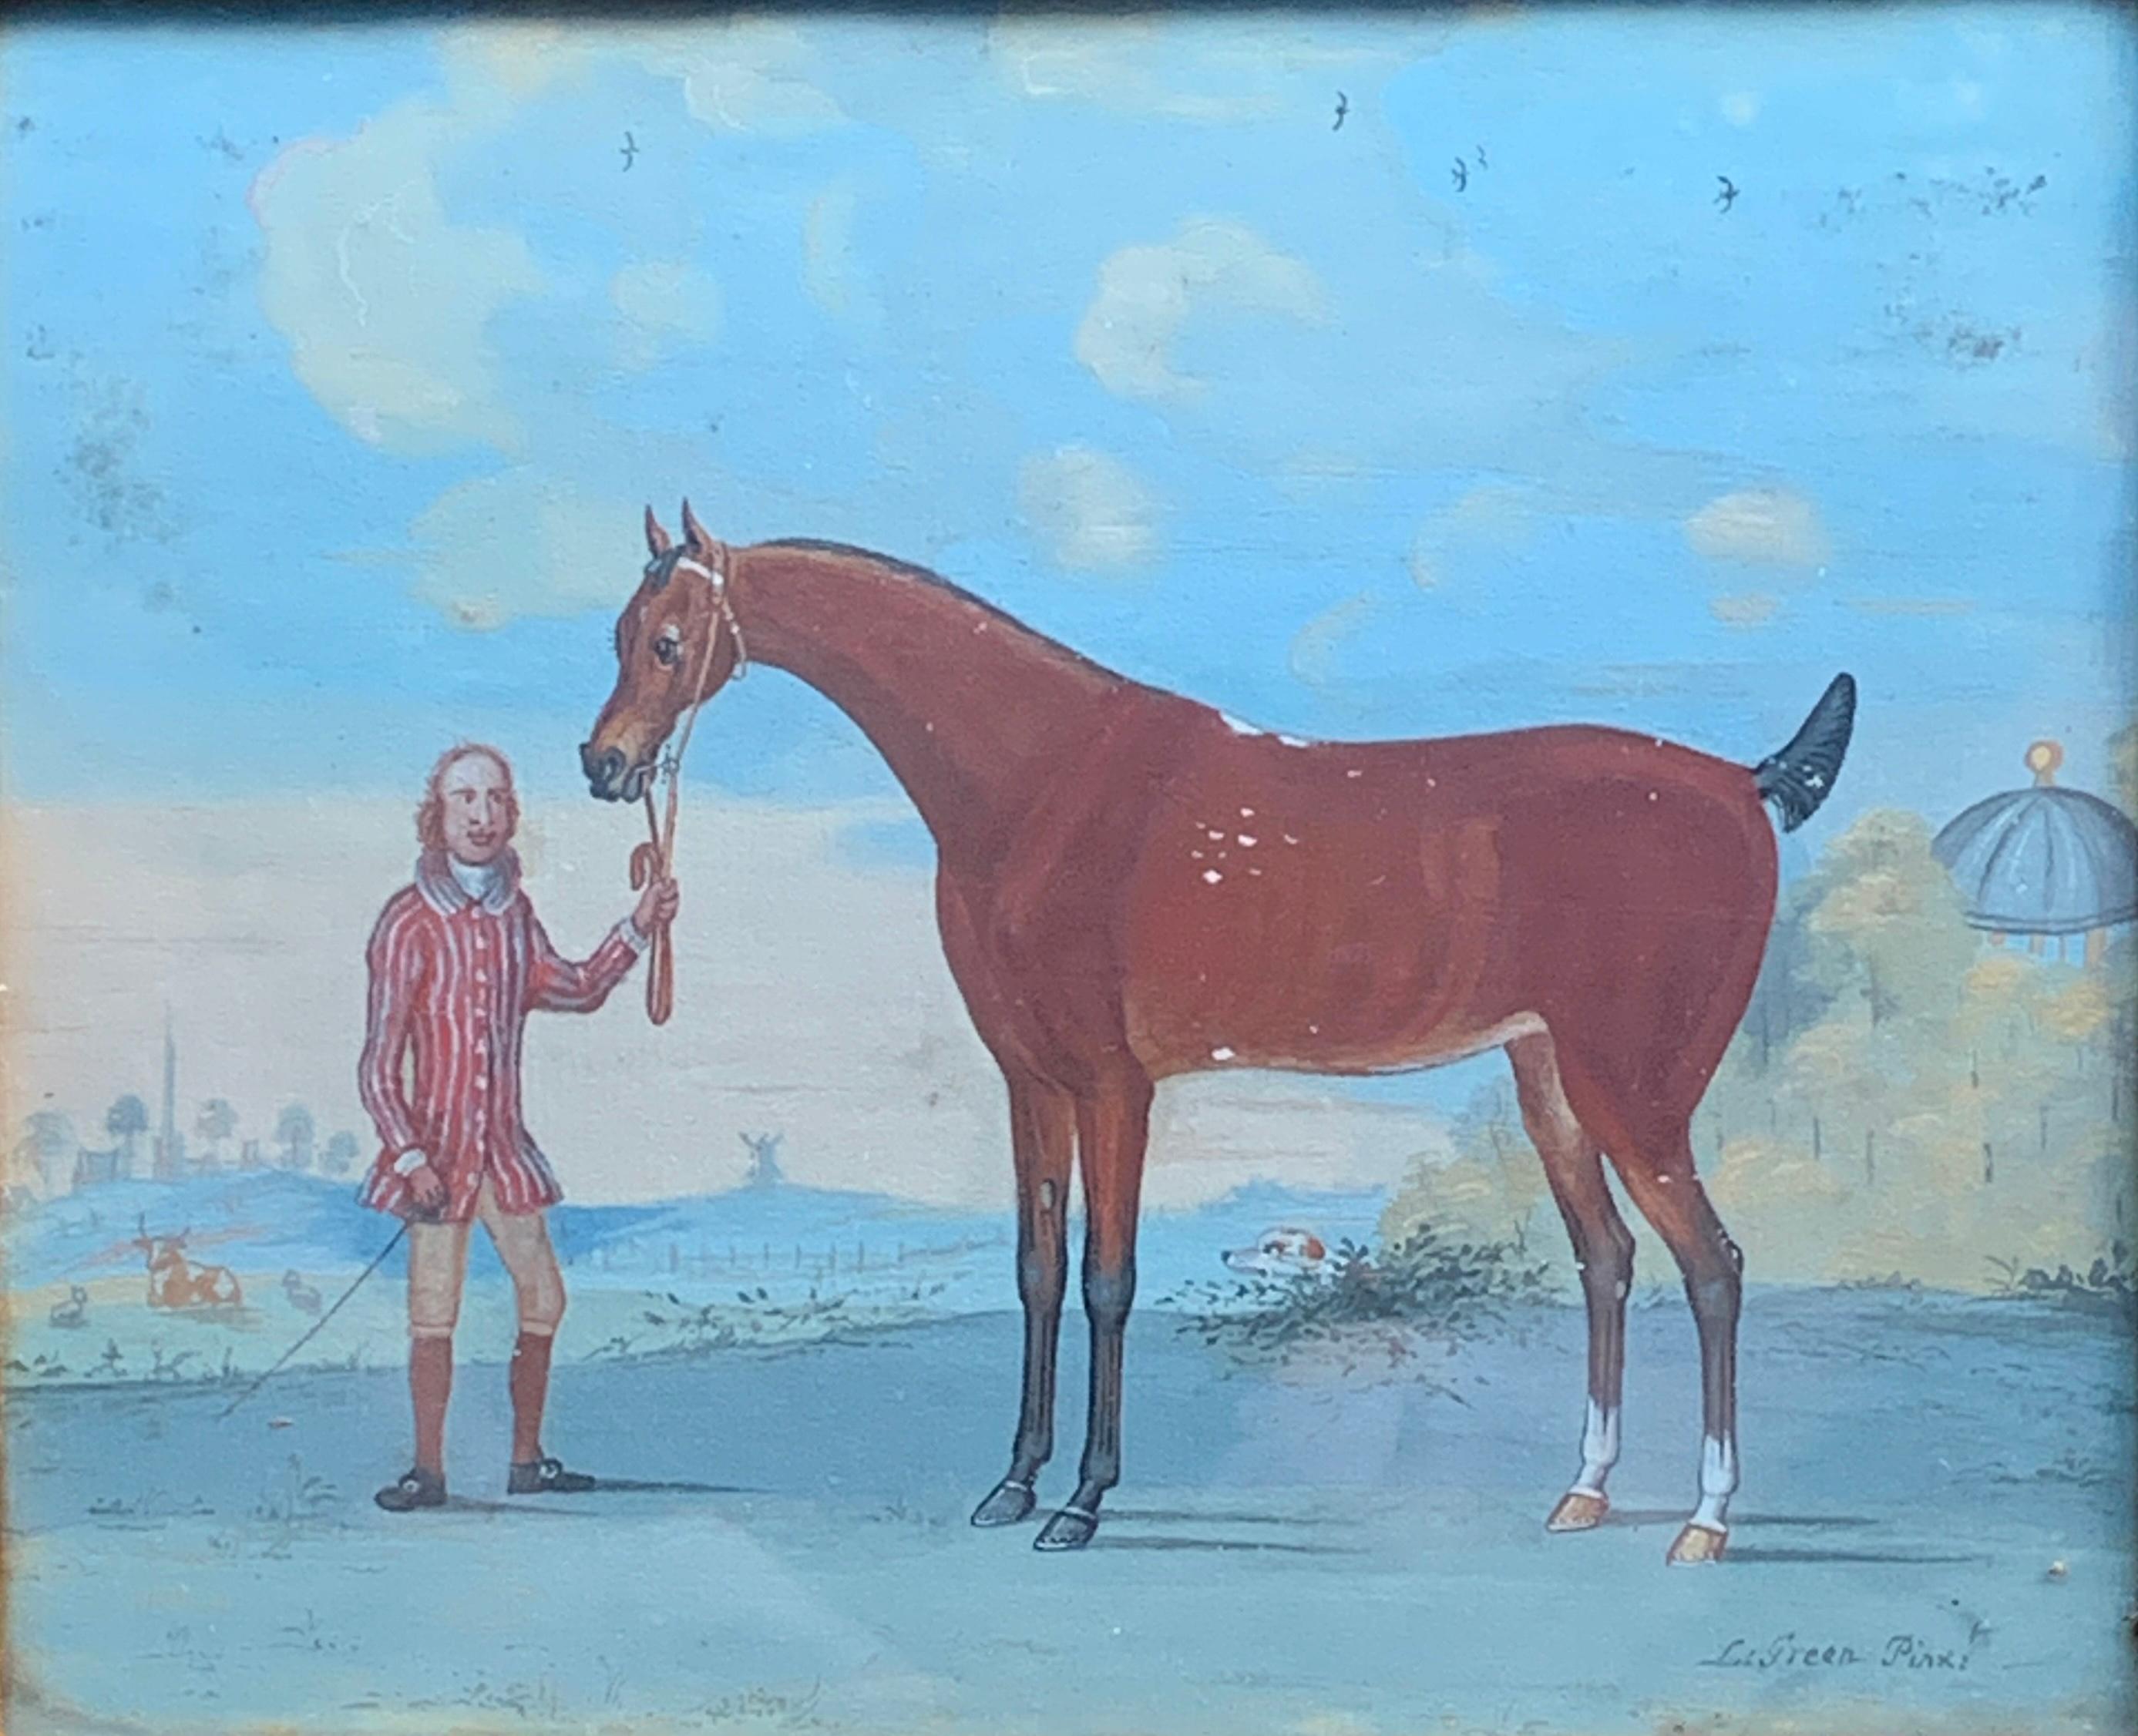 Englische Szene eines Reiters mit einem Pferd in einer Landschaft aus dem 18. Jahrhundert – Painting von L.Green